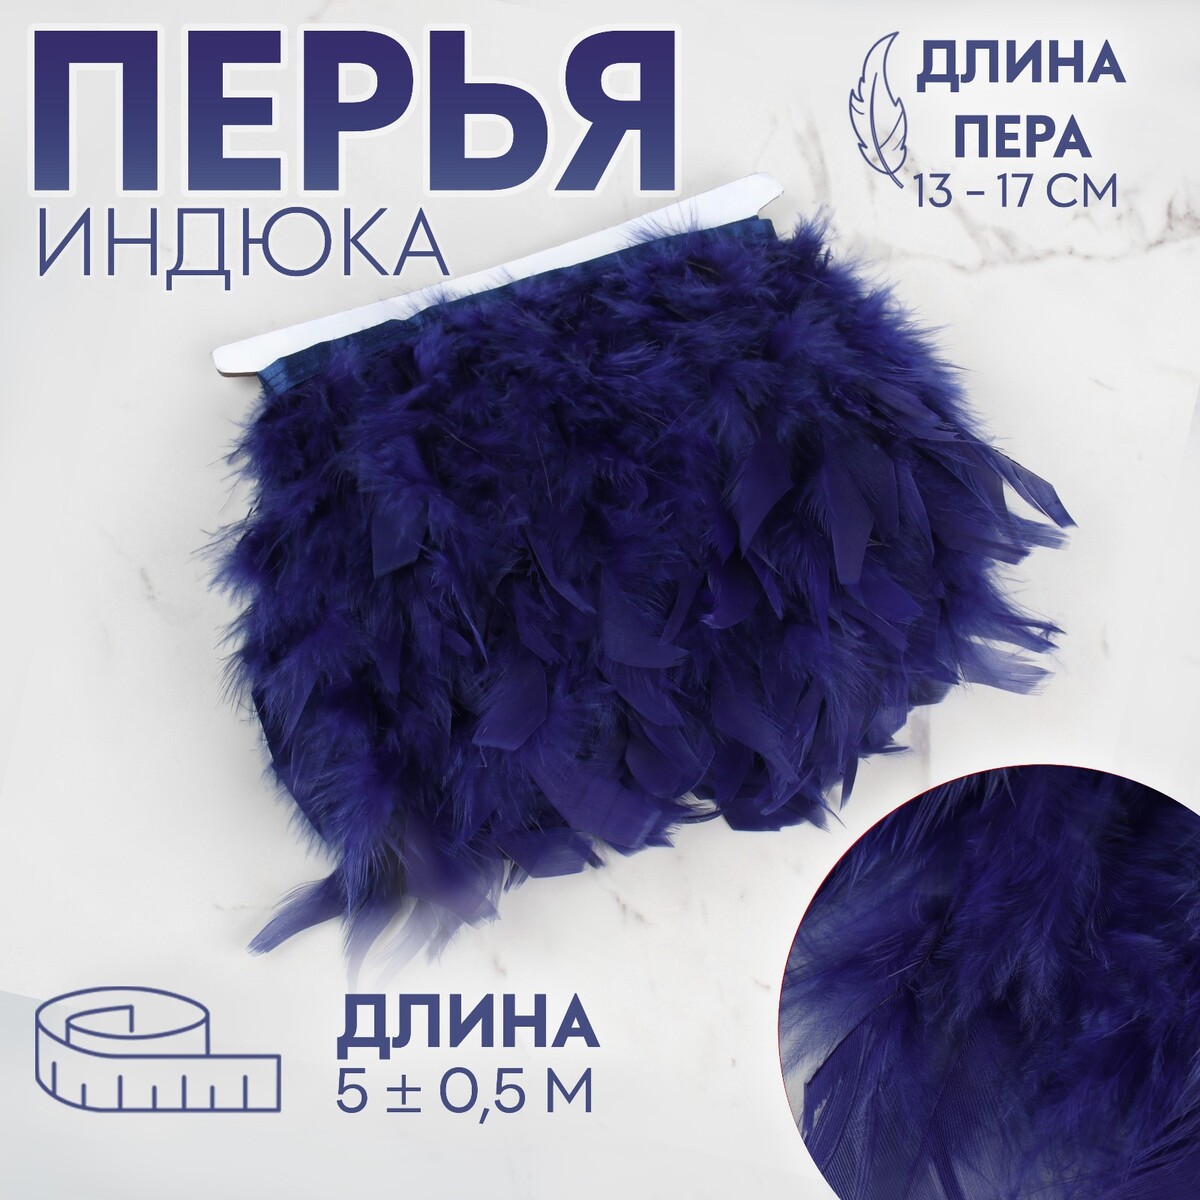 Тесьма с перьями индюка, 13-17 см, 5 ± 0,5 м, цвет темно-синий тесьма с перьями петуха 10 15 см 5 ± 0 5 м синий